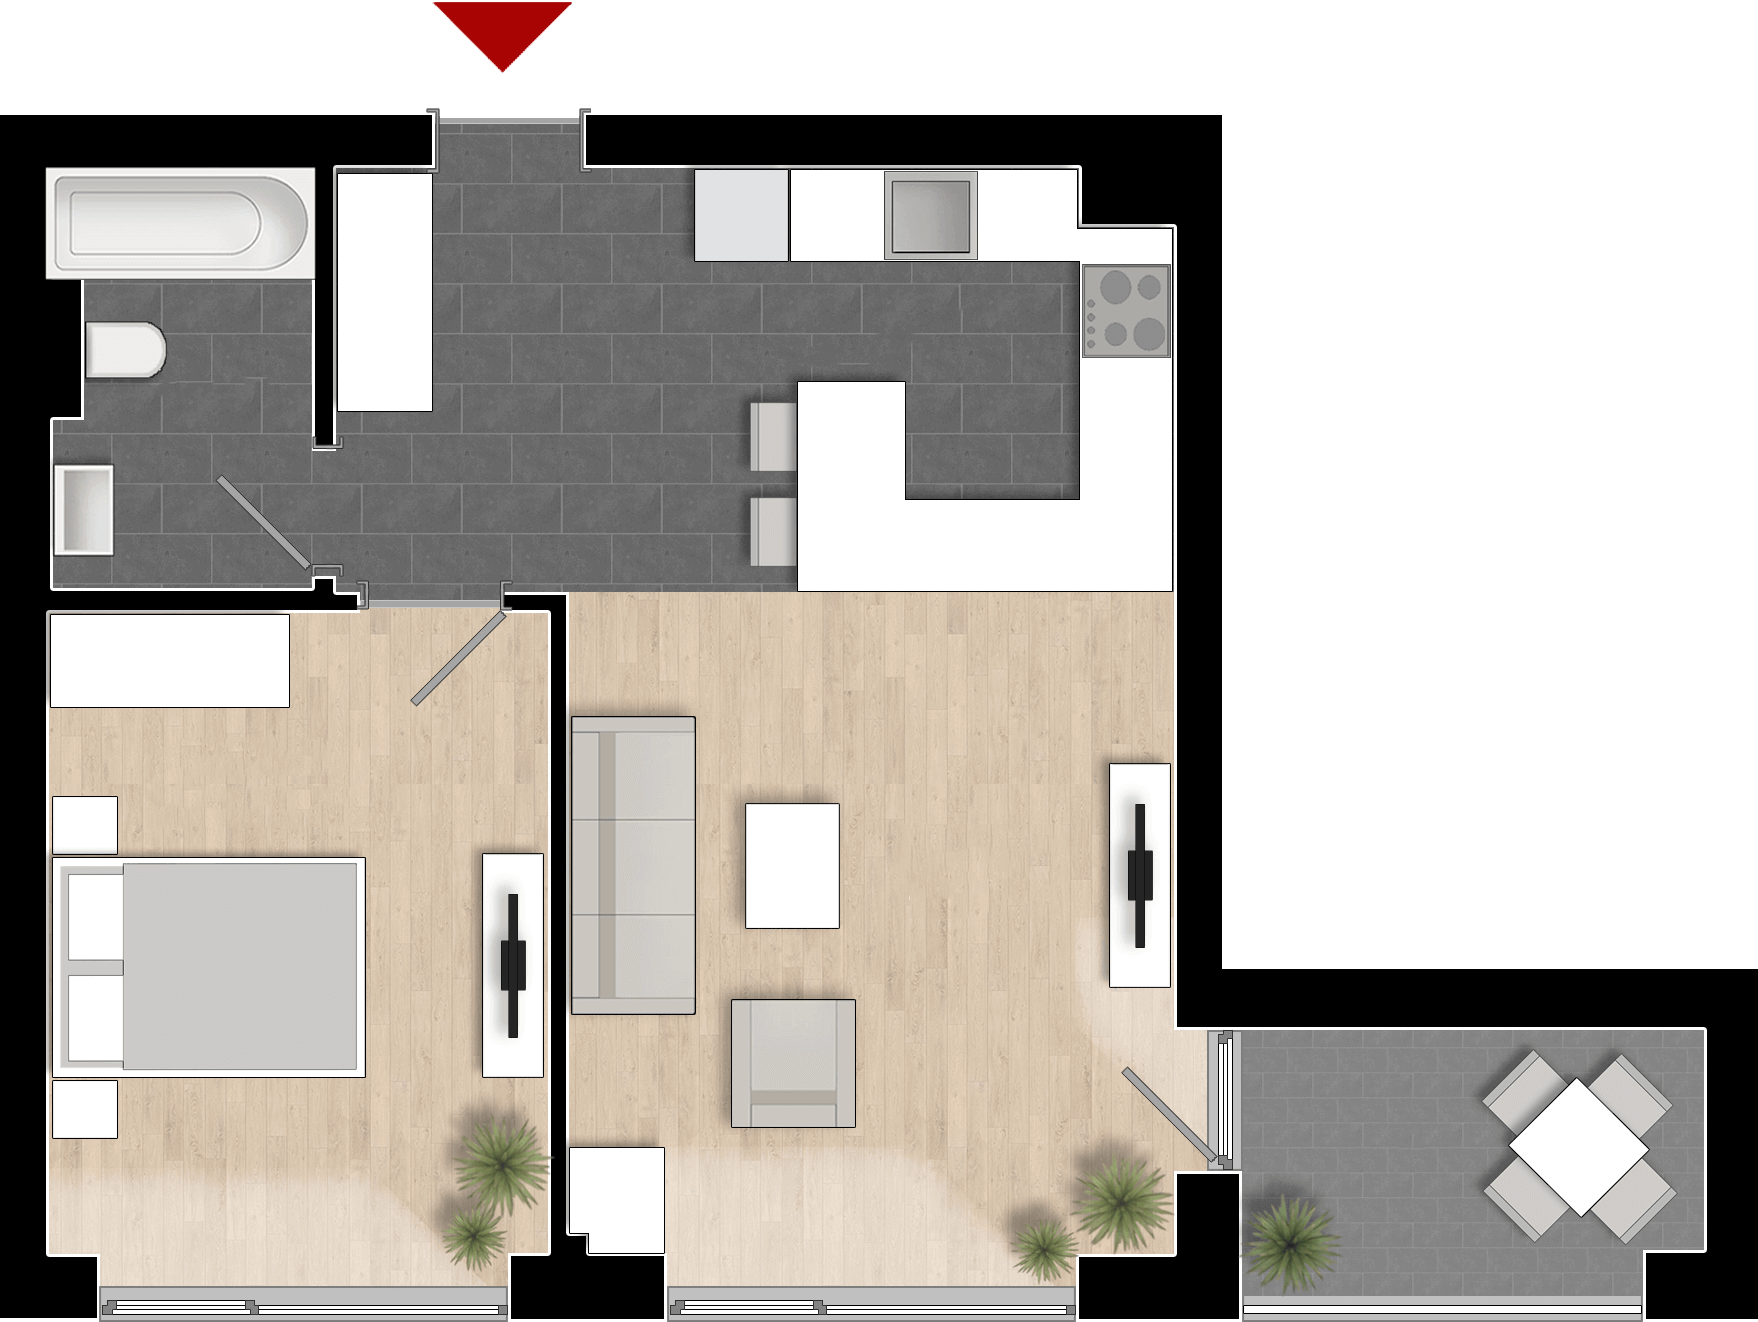  Apartament Tip 1A cu 2 camere 